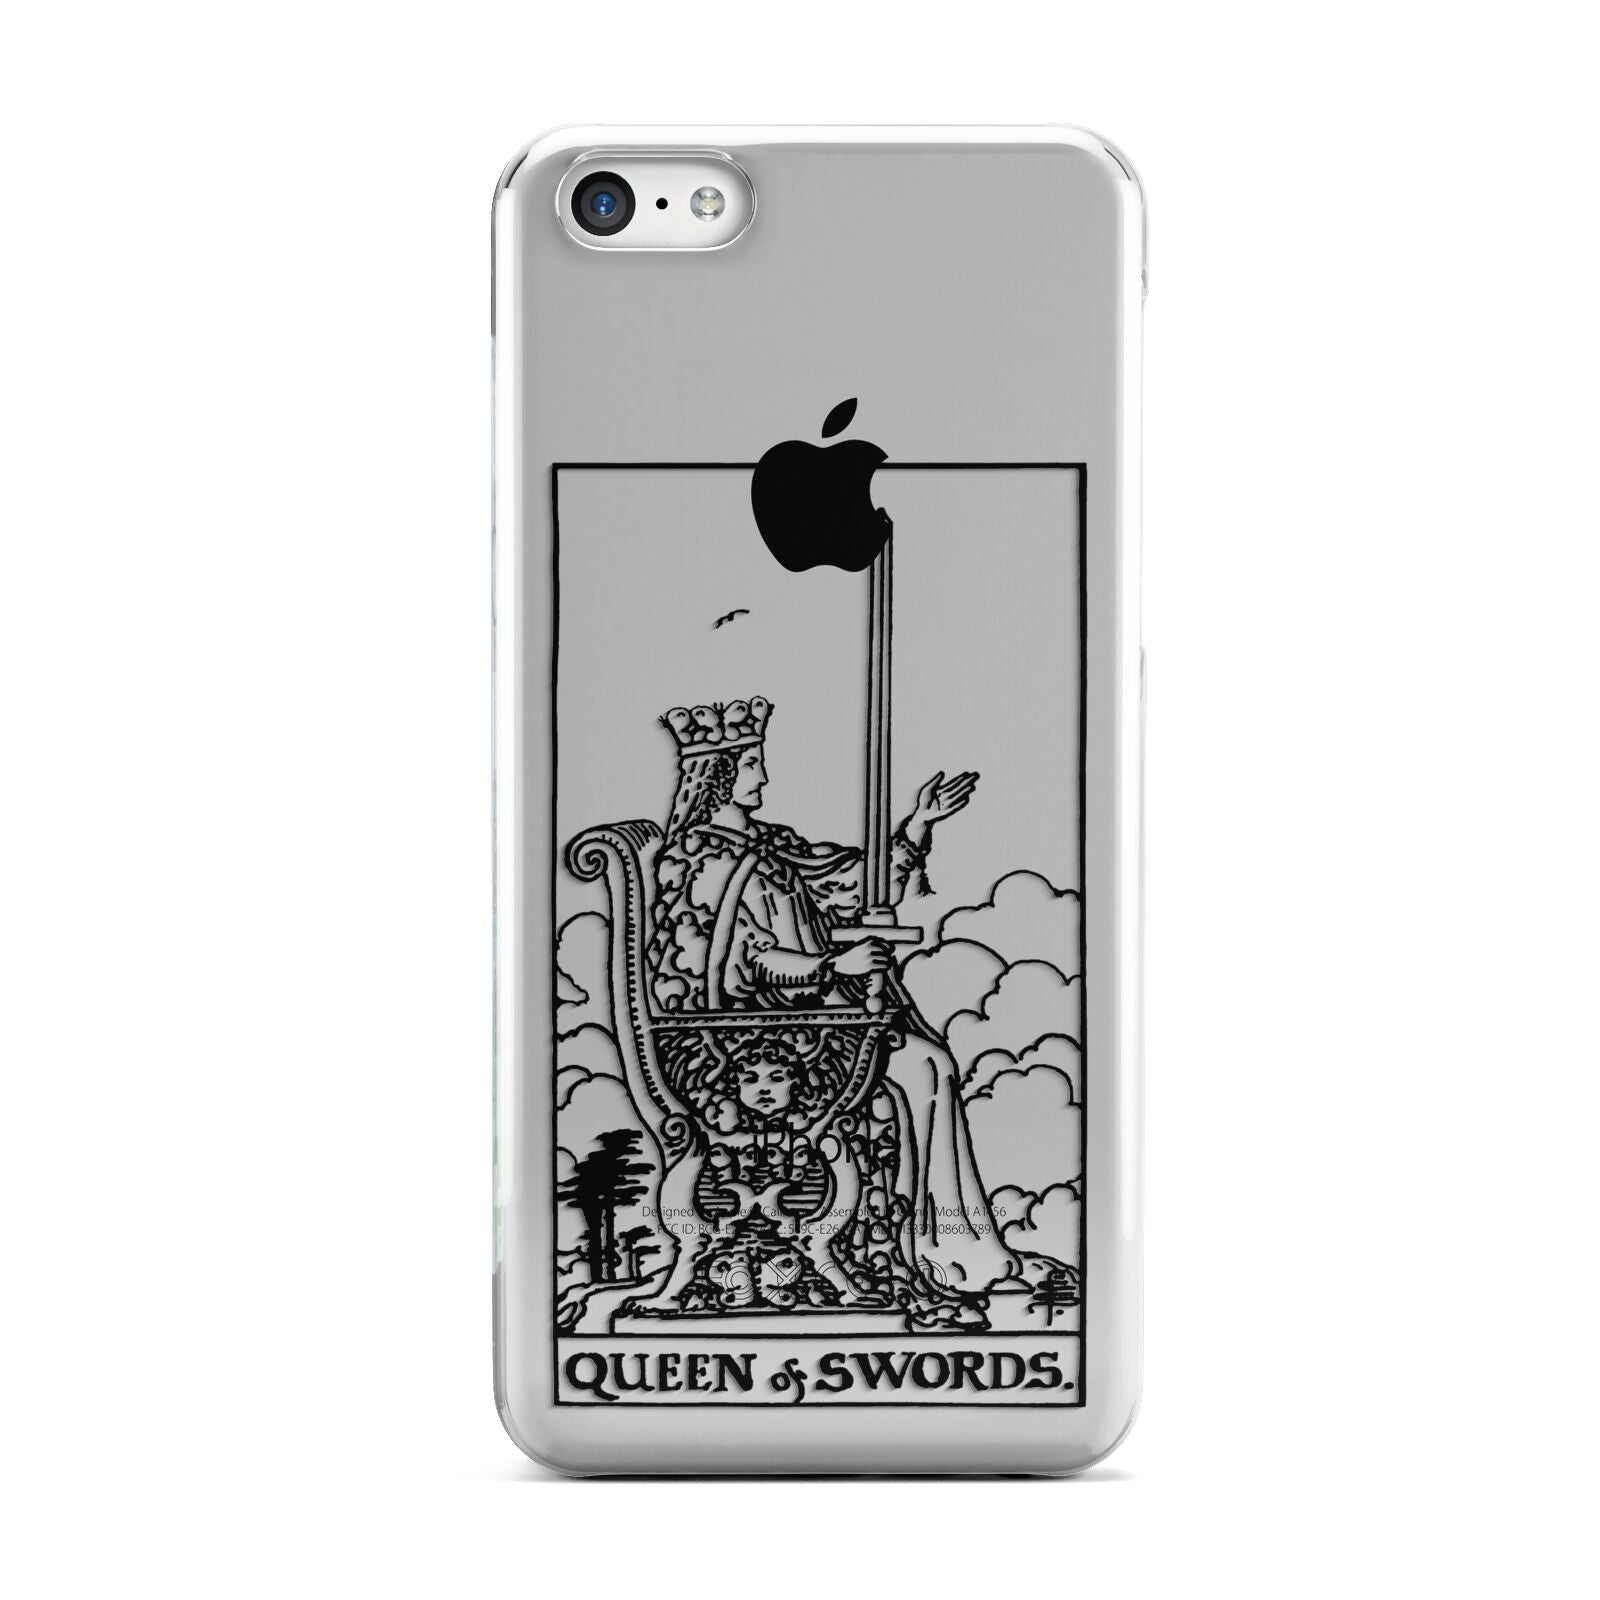 Queen of Swords Monochrome Apple iPhone 5c Case